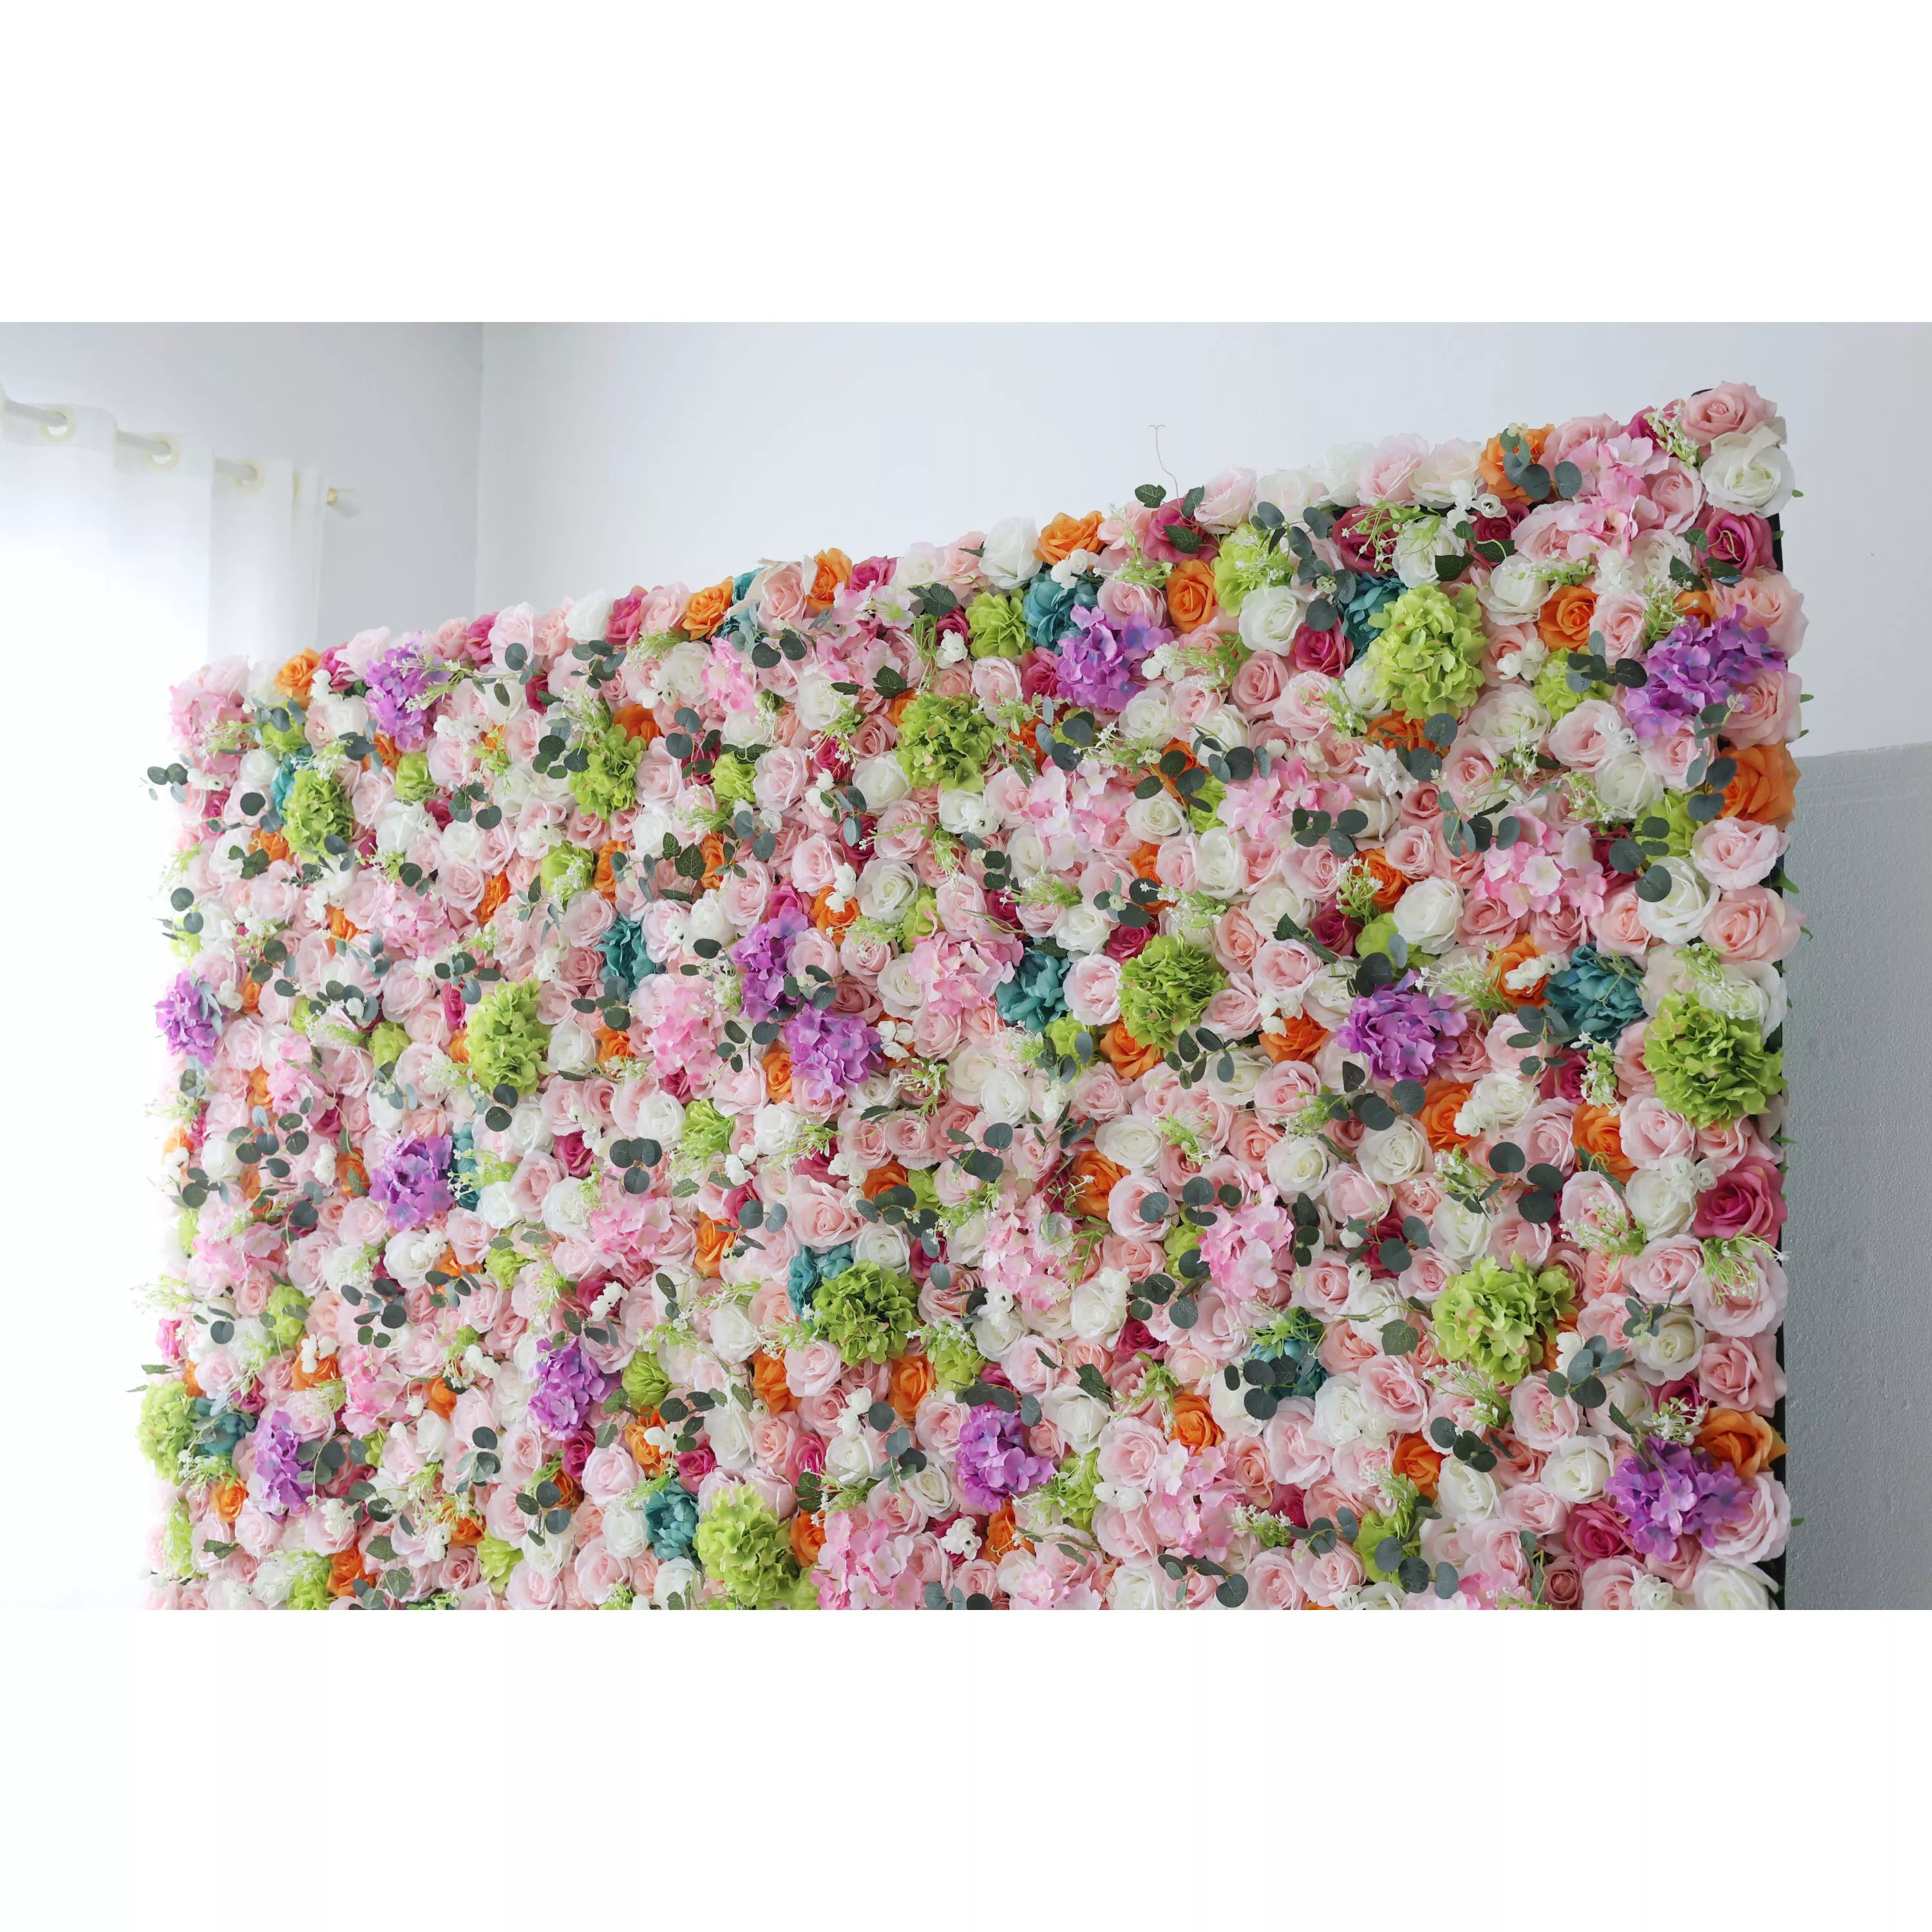 خلفية جدار أزهار زهور اصطناعية: جالا ساحرا للحديقة-رقصة مبهرة بألوان رقيقة وإزهار نابضة بالحياة.--